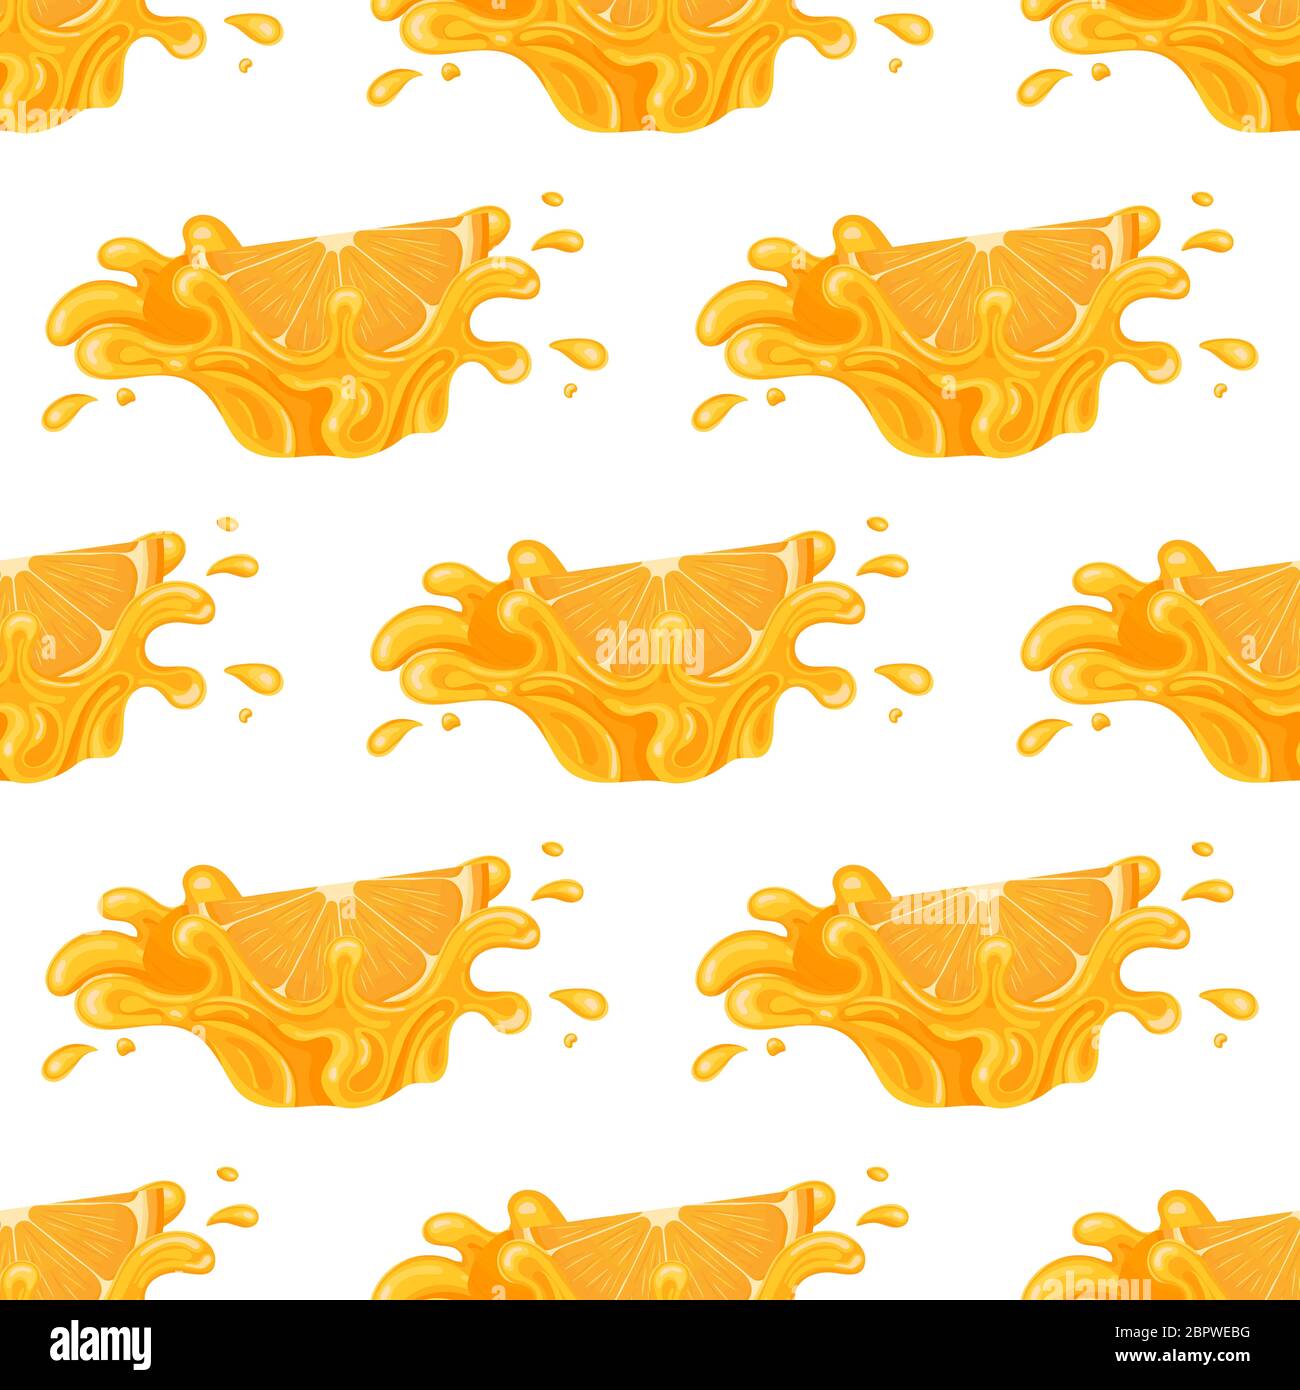 Nahtloses Muster mit frischem, hellem Orange, Mandarine oder Tagerine Saft Spritzer platzen isoliert auf weißem Hintergrund. Sommerobstsaft. Cartoon-Stil. Ve Stock Vektor